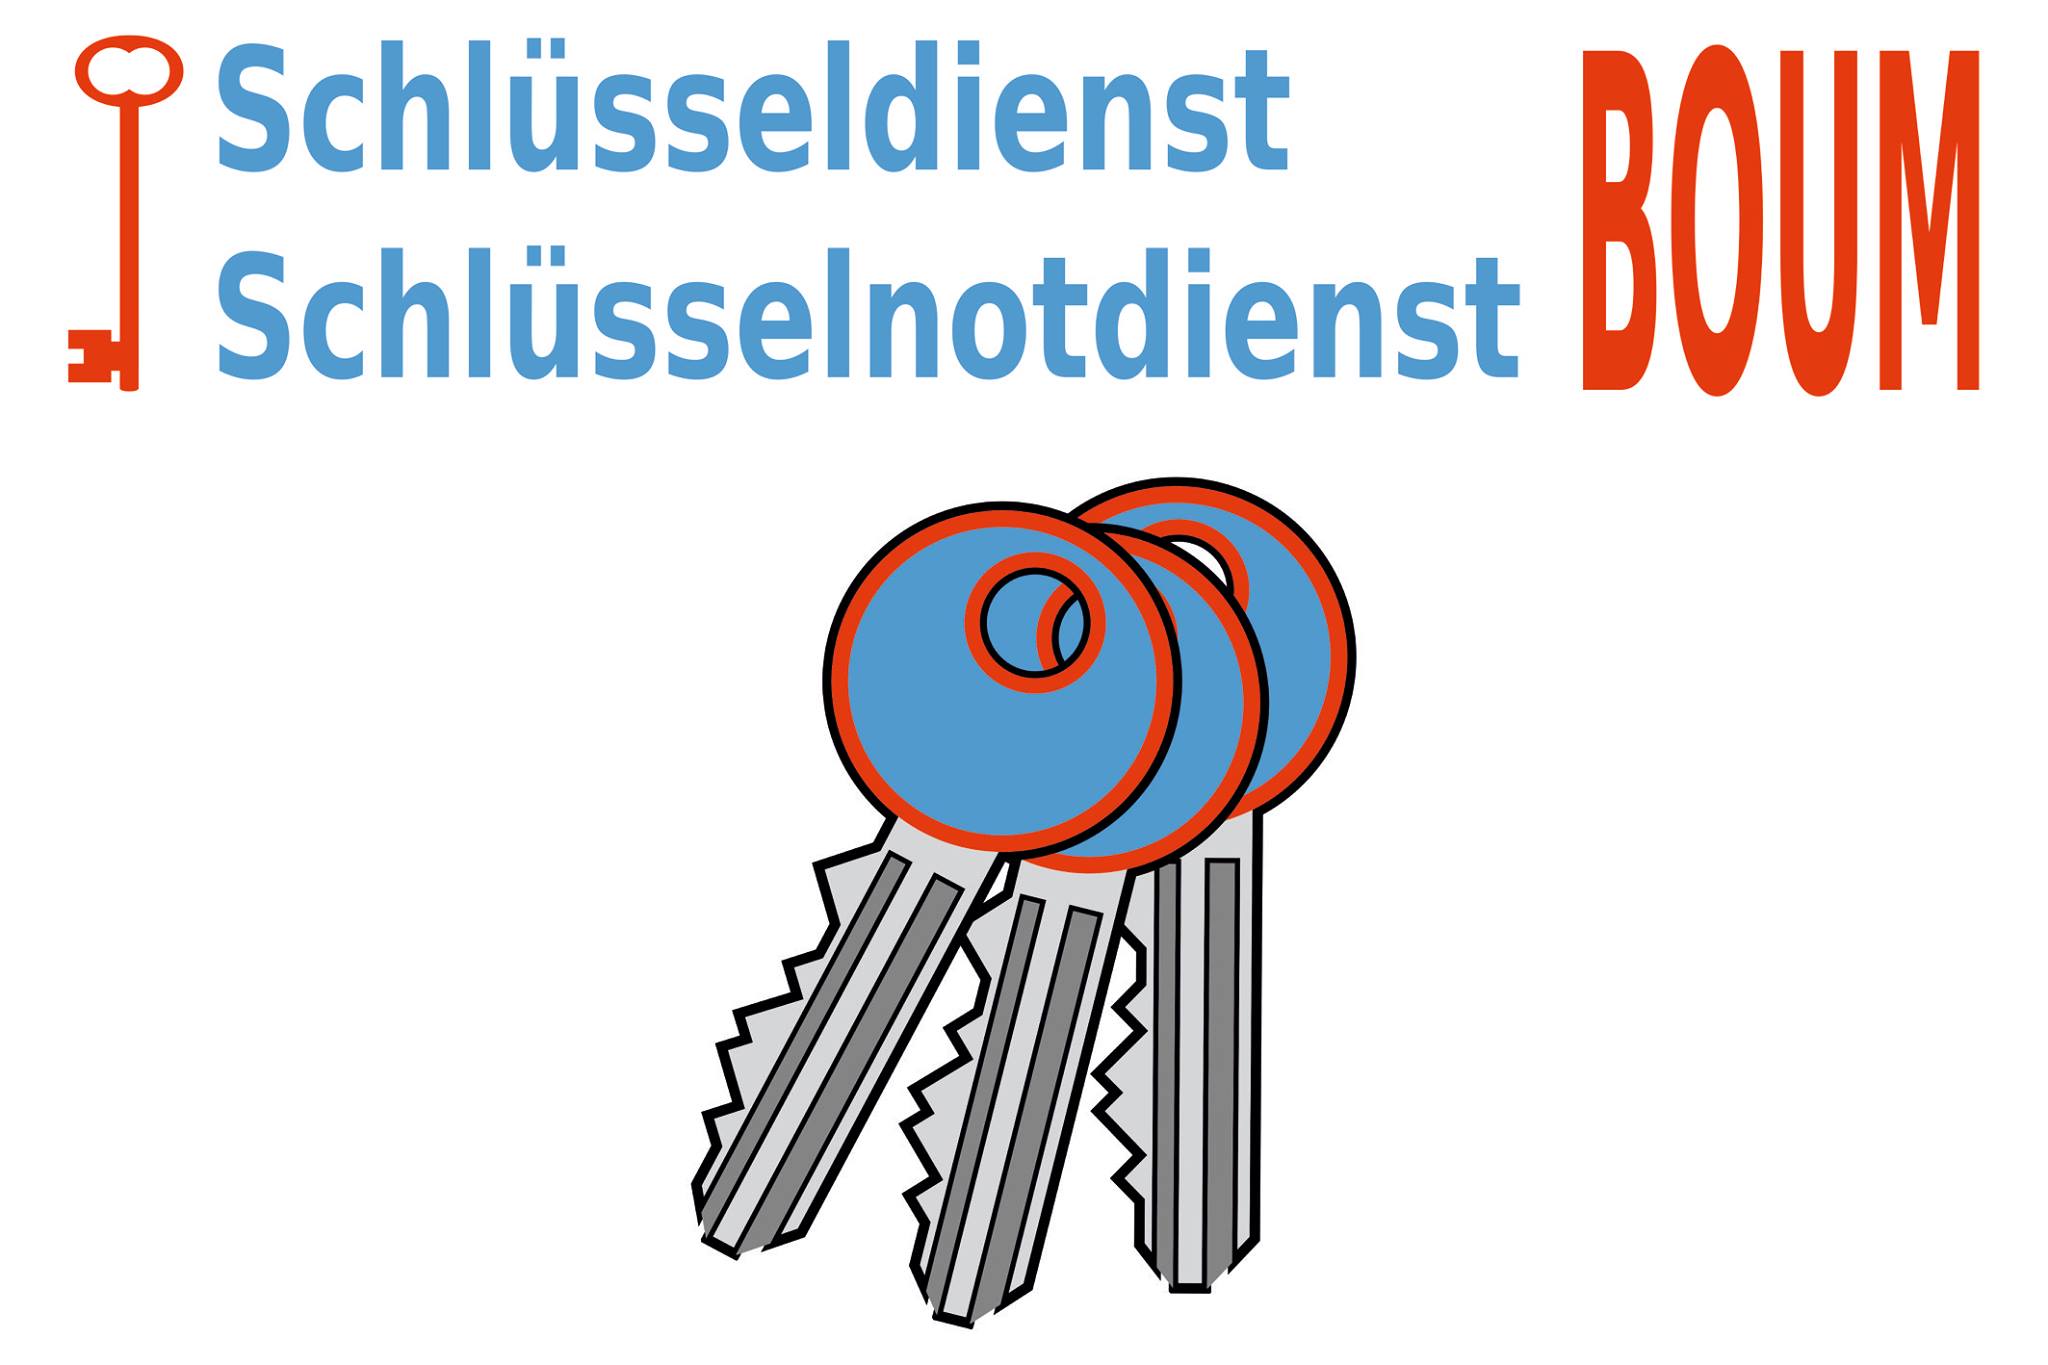 (c) Schluesseldienst-boum.de